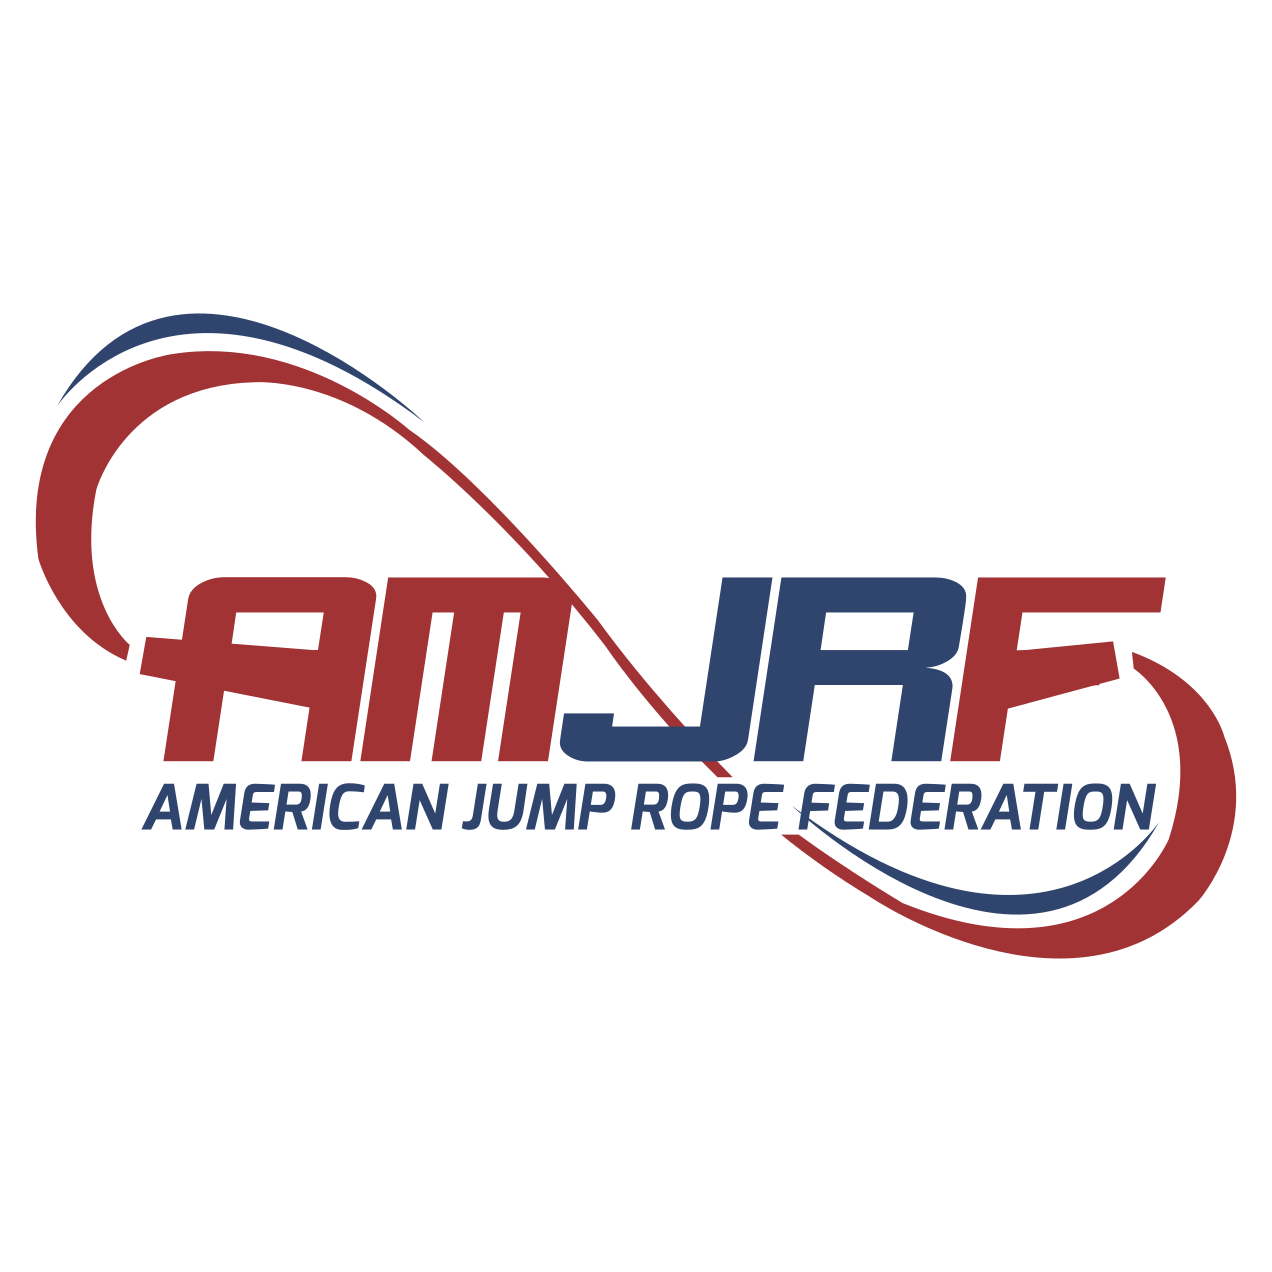 amjrf-logo-1